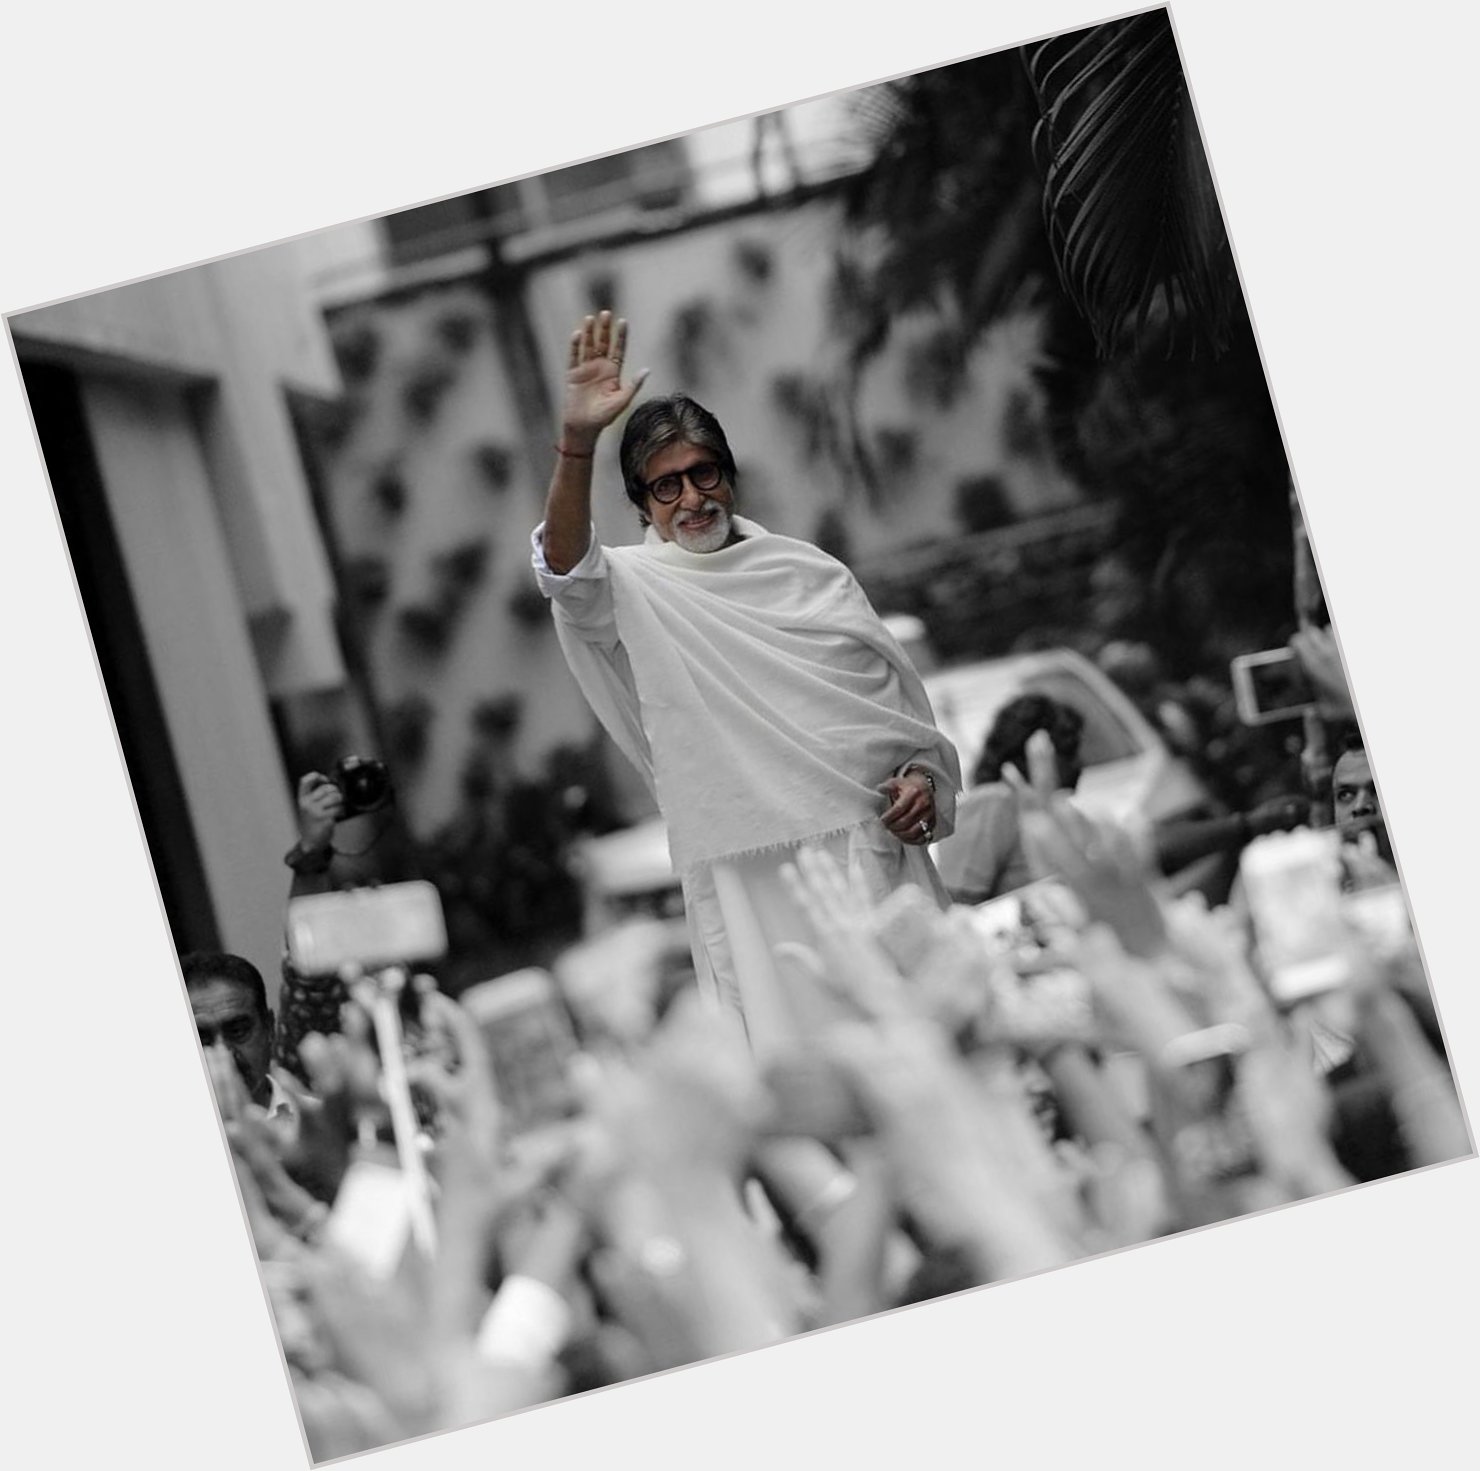 Happy birthday Amitabh Bachchan sir 